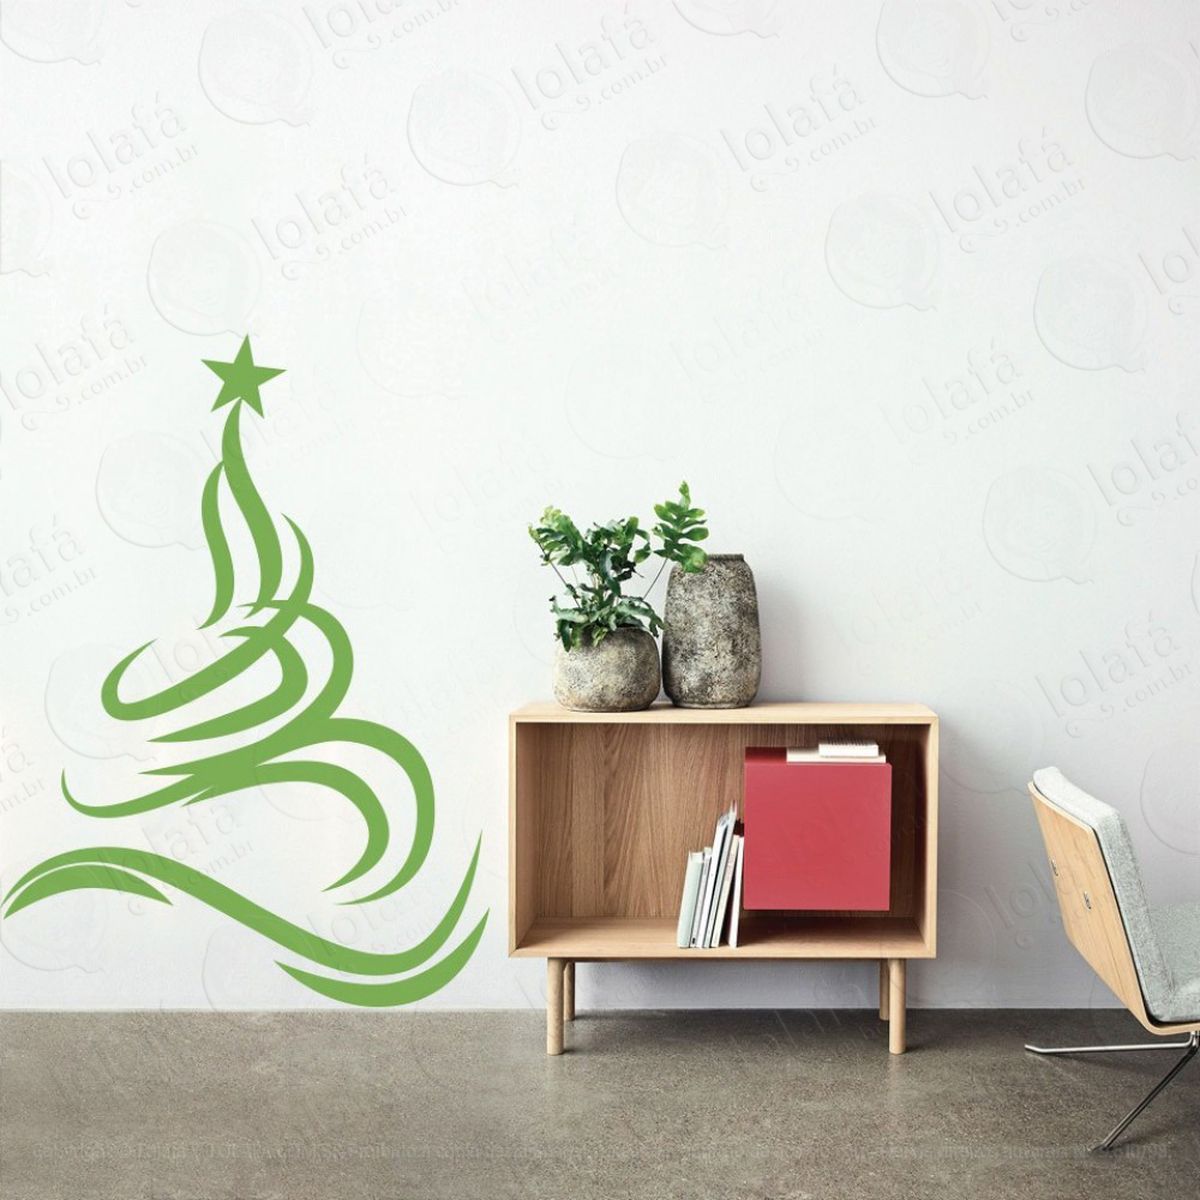 Árvore adesivo de natal para vitrine, parede, porta de vidro - decoração natalina mod:340